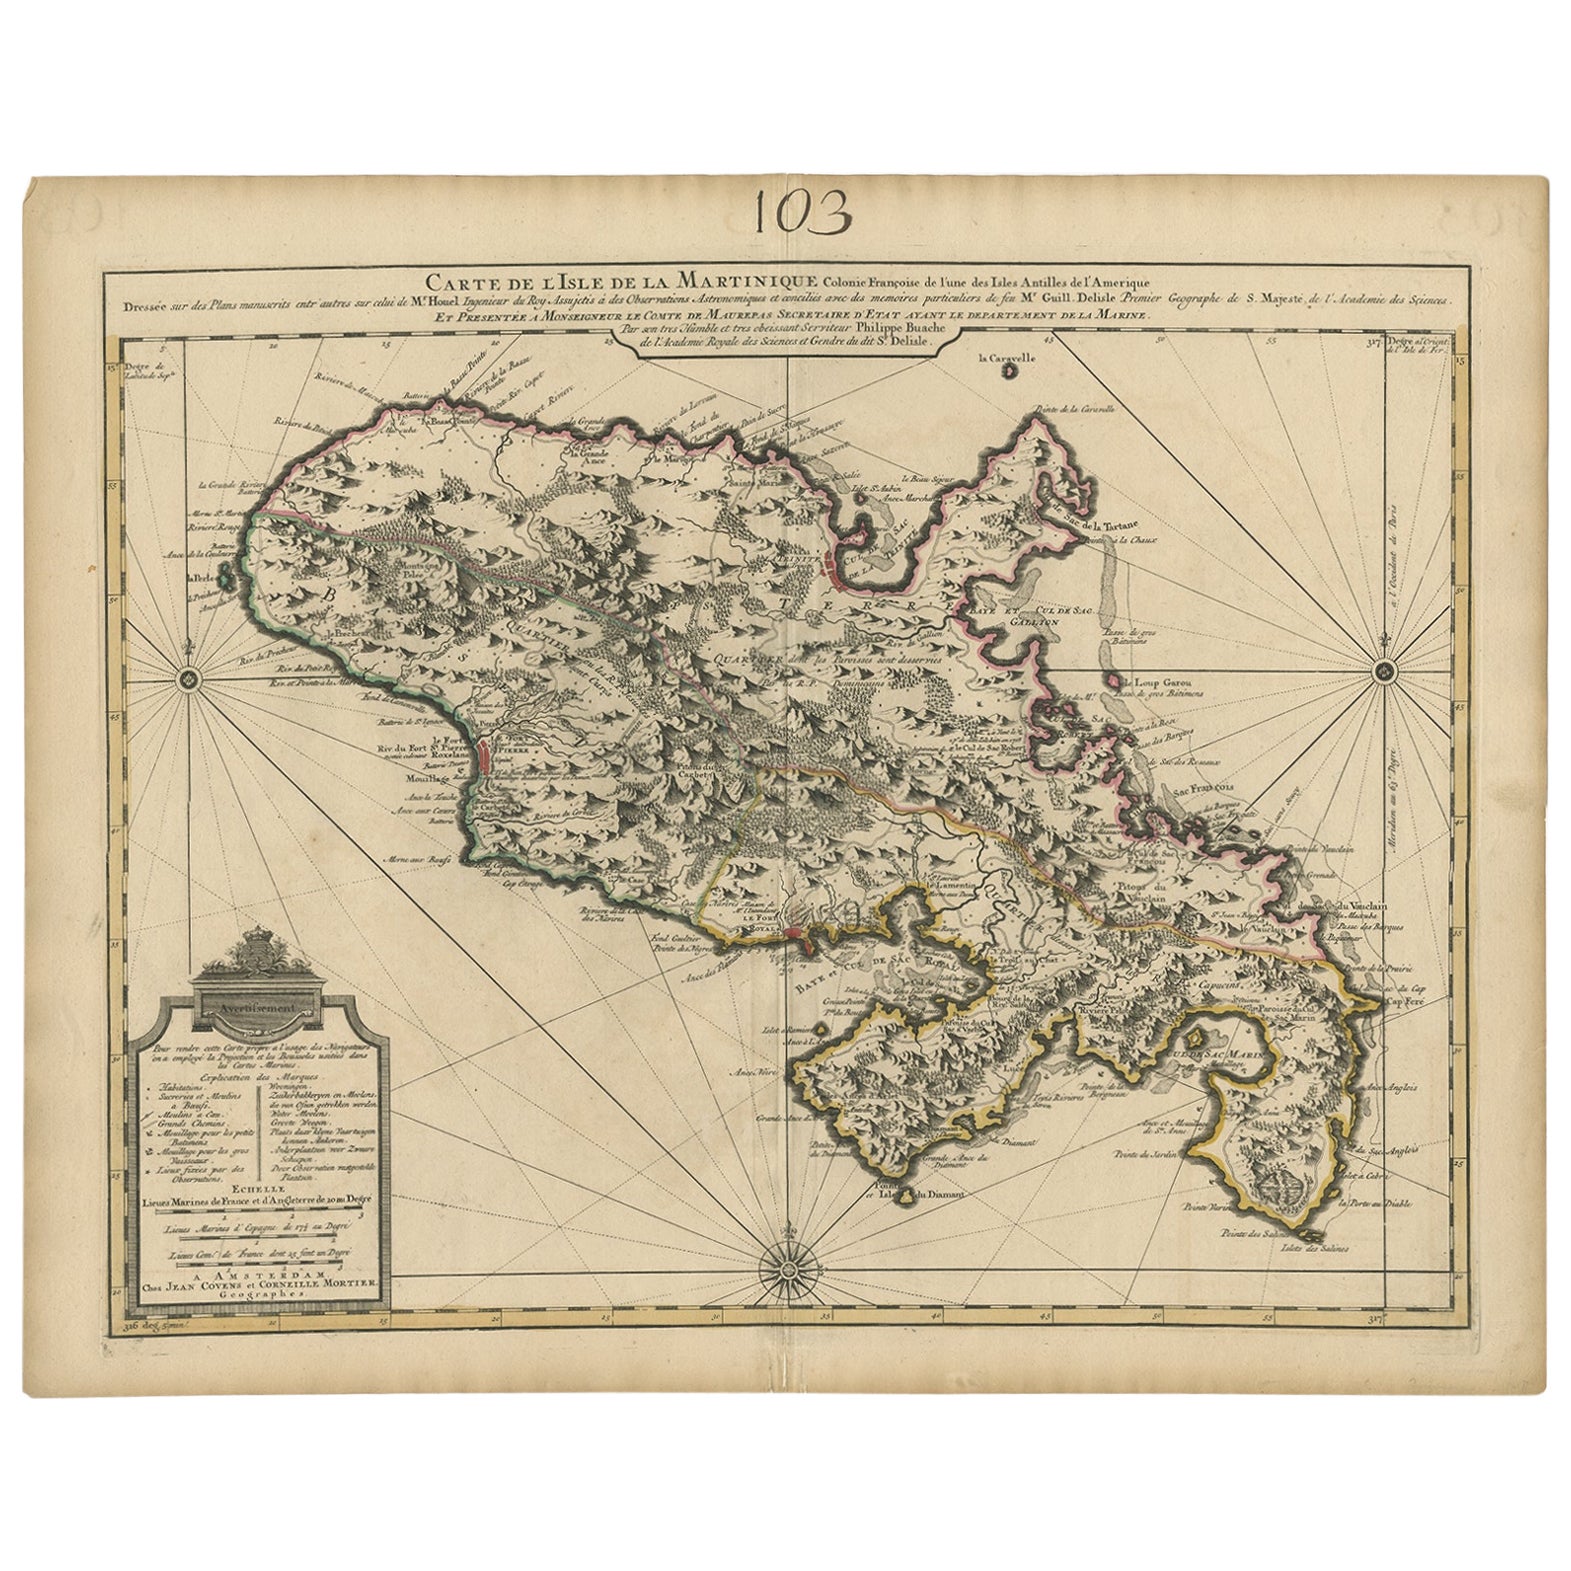 Carte ancienne de Martinique, montrant des routes, des maisons, des plantations de sucre, etc. vers 1750